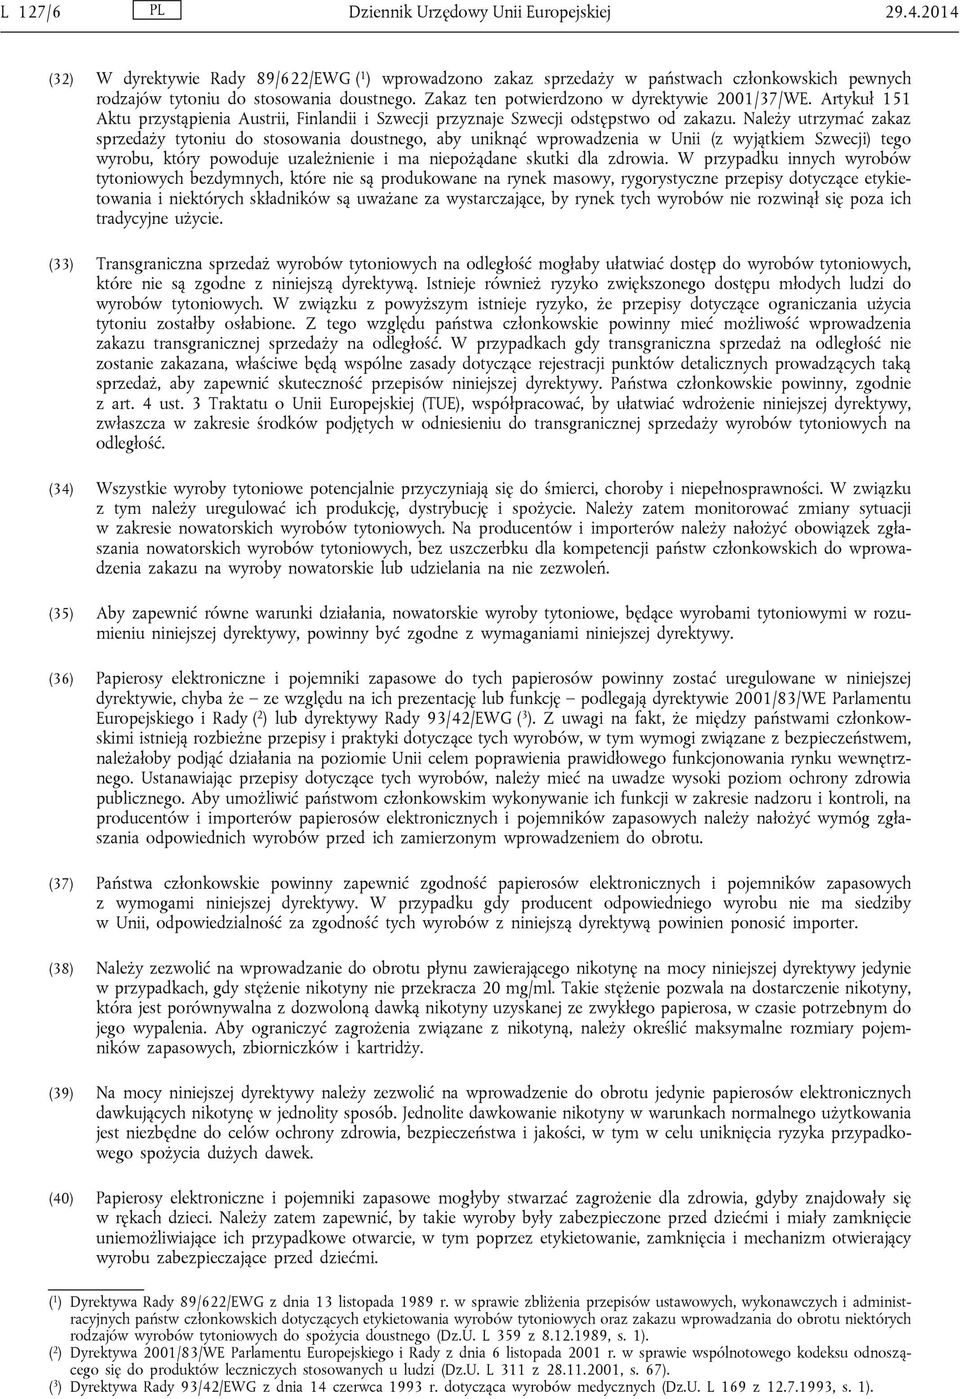 Akty ustawodawcze) DYREKTYWY - PDF Darmowe pobieranie